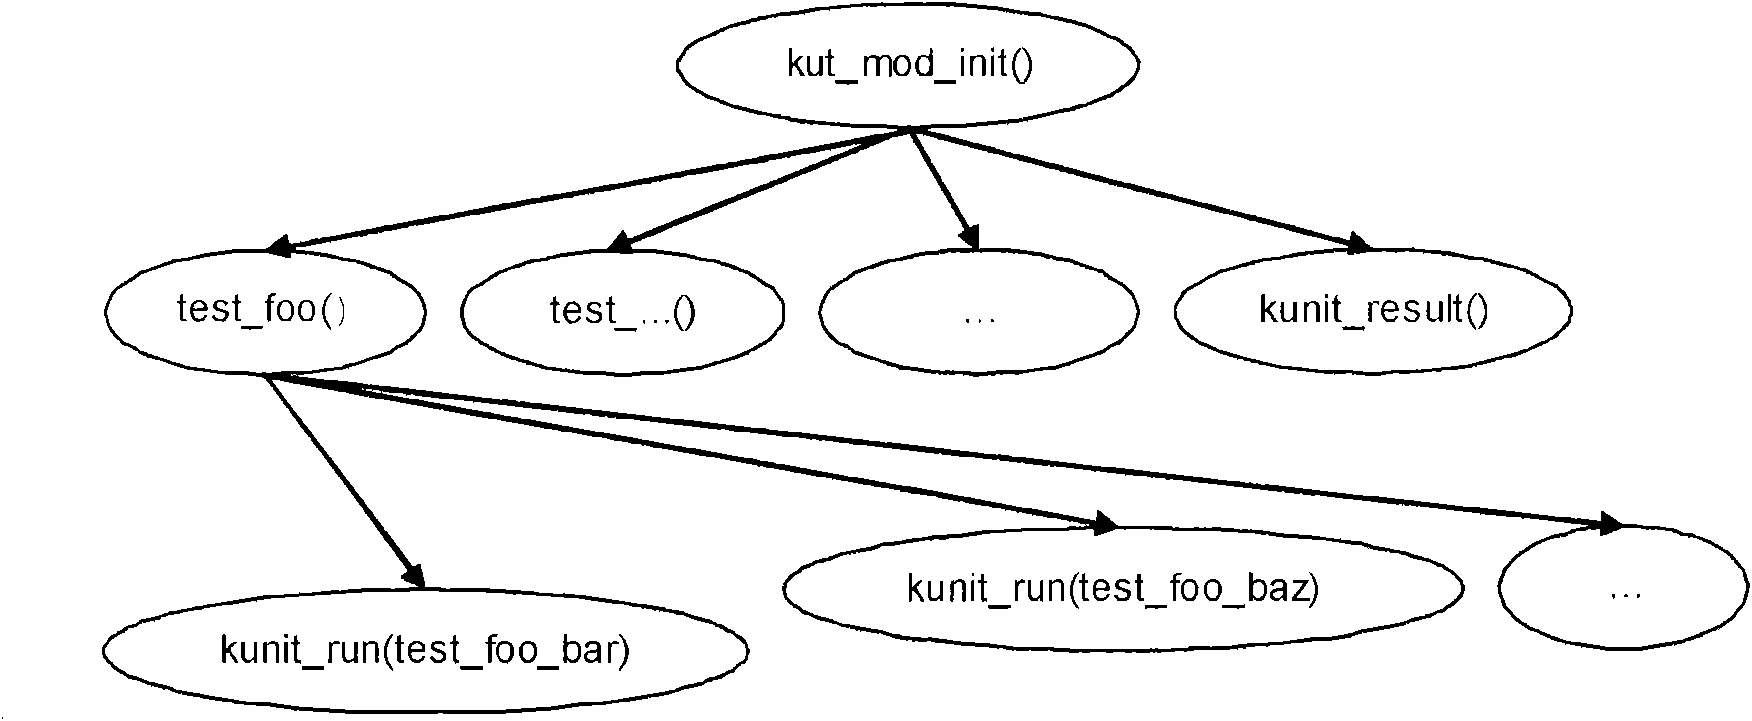 Method for testing Linux kernel-grade unit